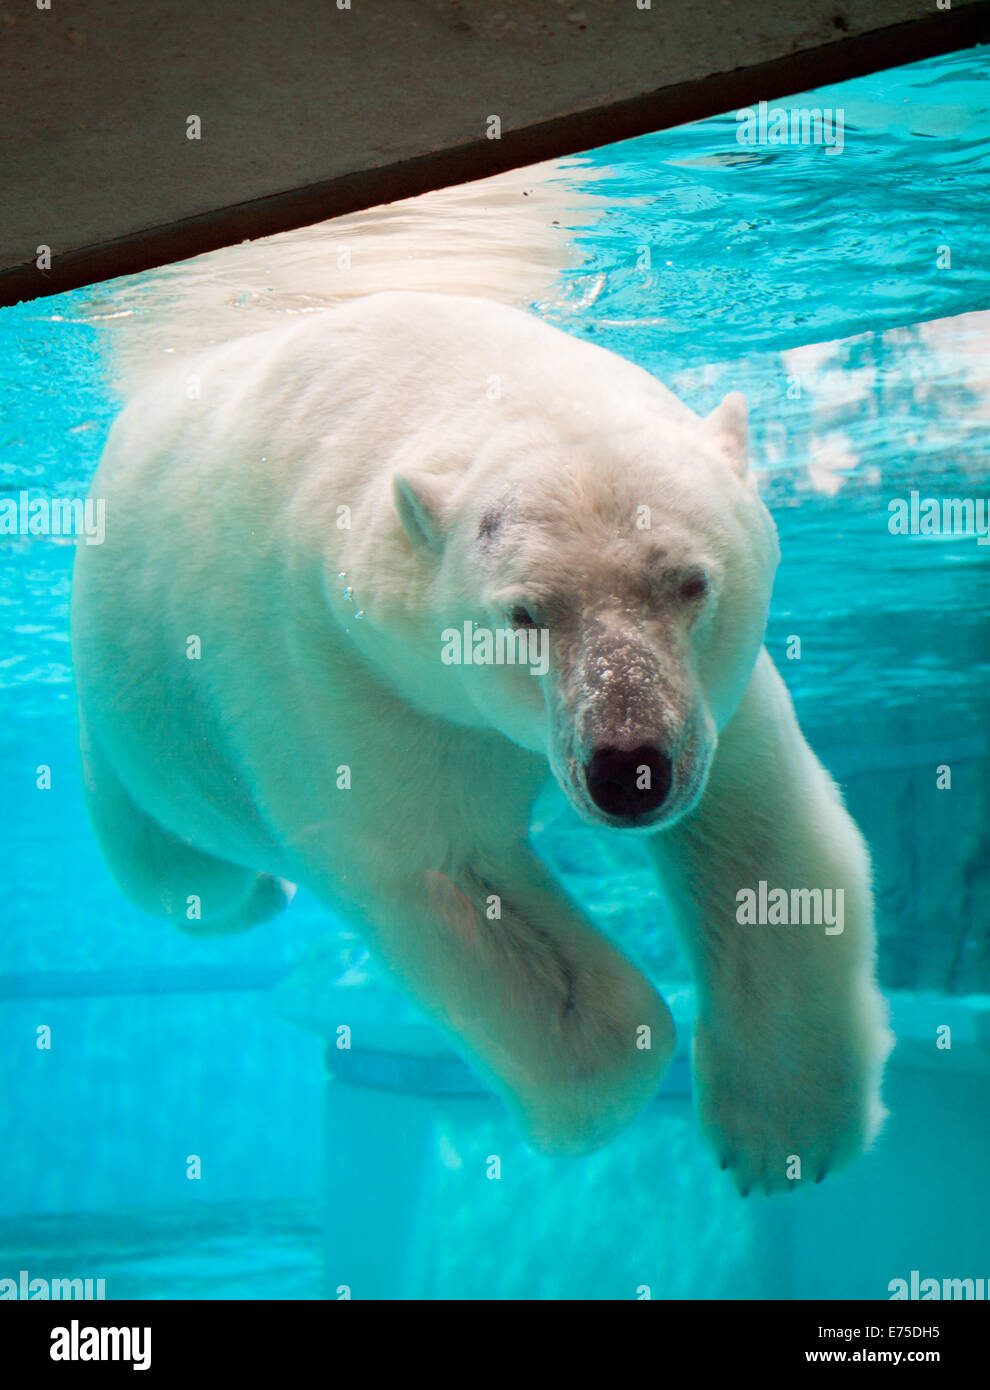 Anana, il resident femmina orso polare del Lincoln Park Zoo di Chicago, nuota sott'acqua in un caldo giorno d'estate. Foto Stock